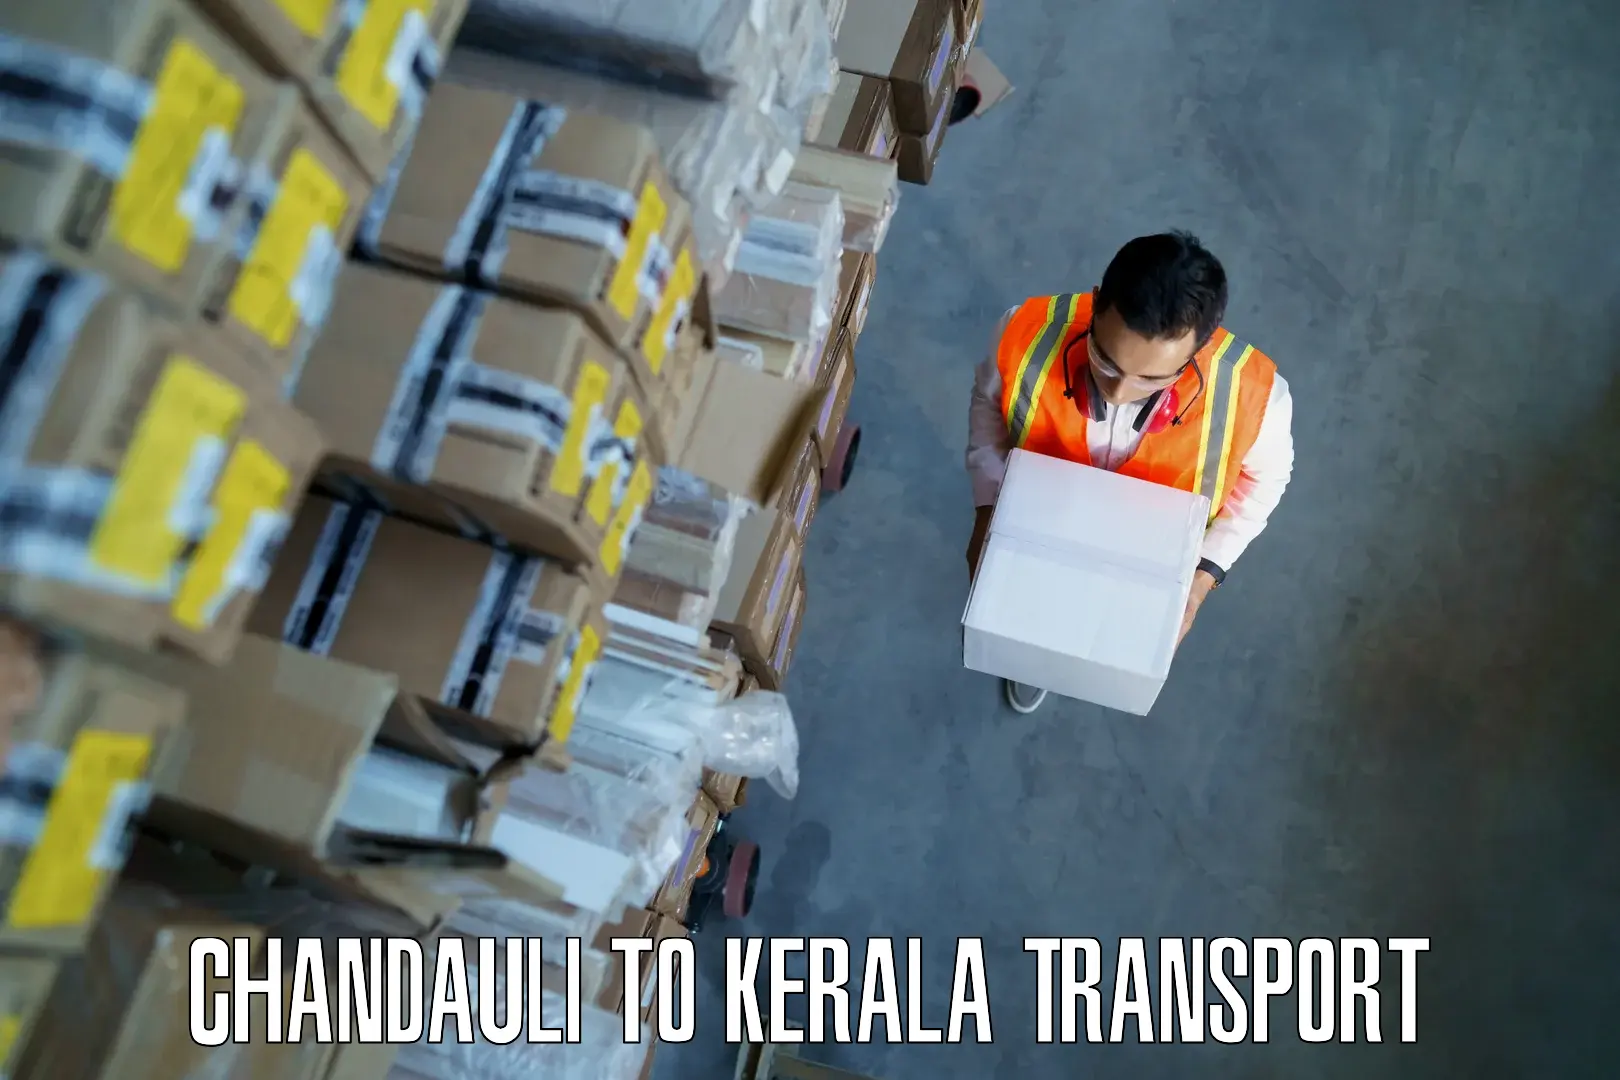 Air freight transport services Chandauli to Kalanjoor